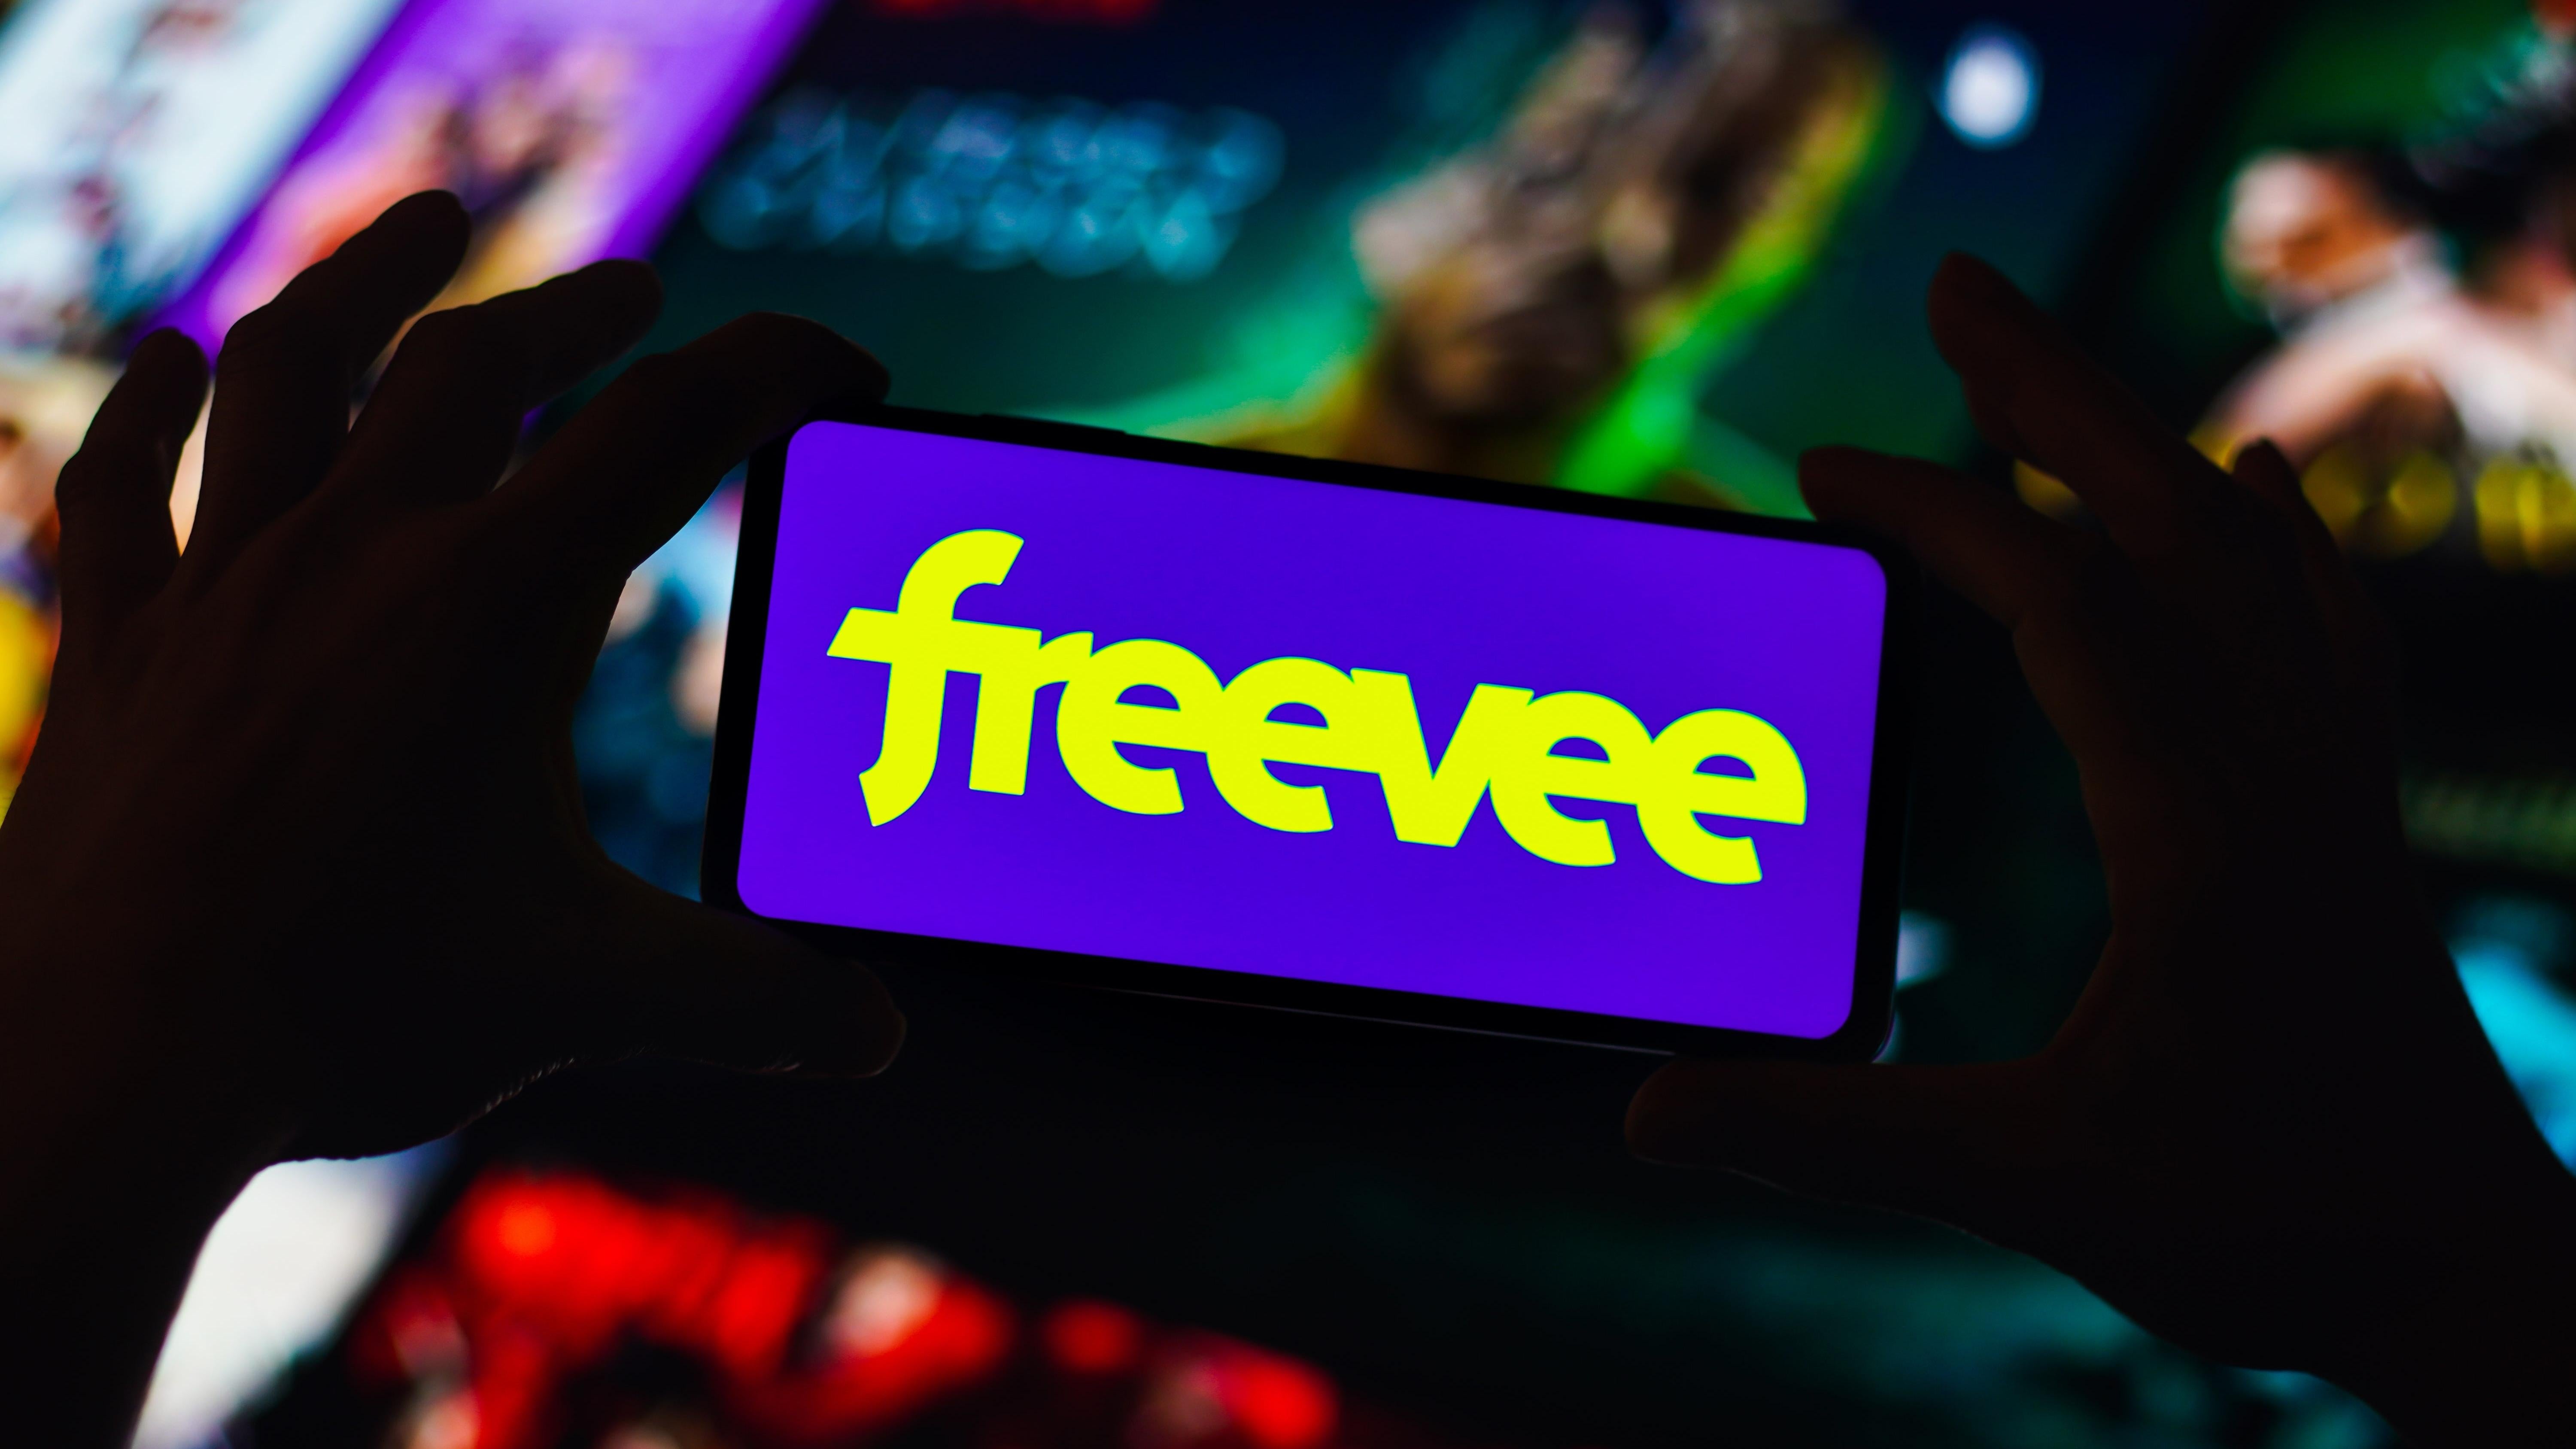 في هذا الرسم التوضيحي للصور ، يتم عرض شعار Freevee على شاشة الهاتف الذكي أمام صف من العروض غير الواضحة.